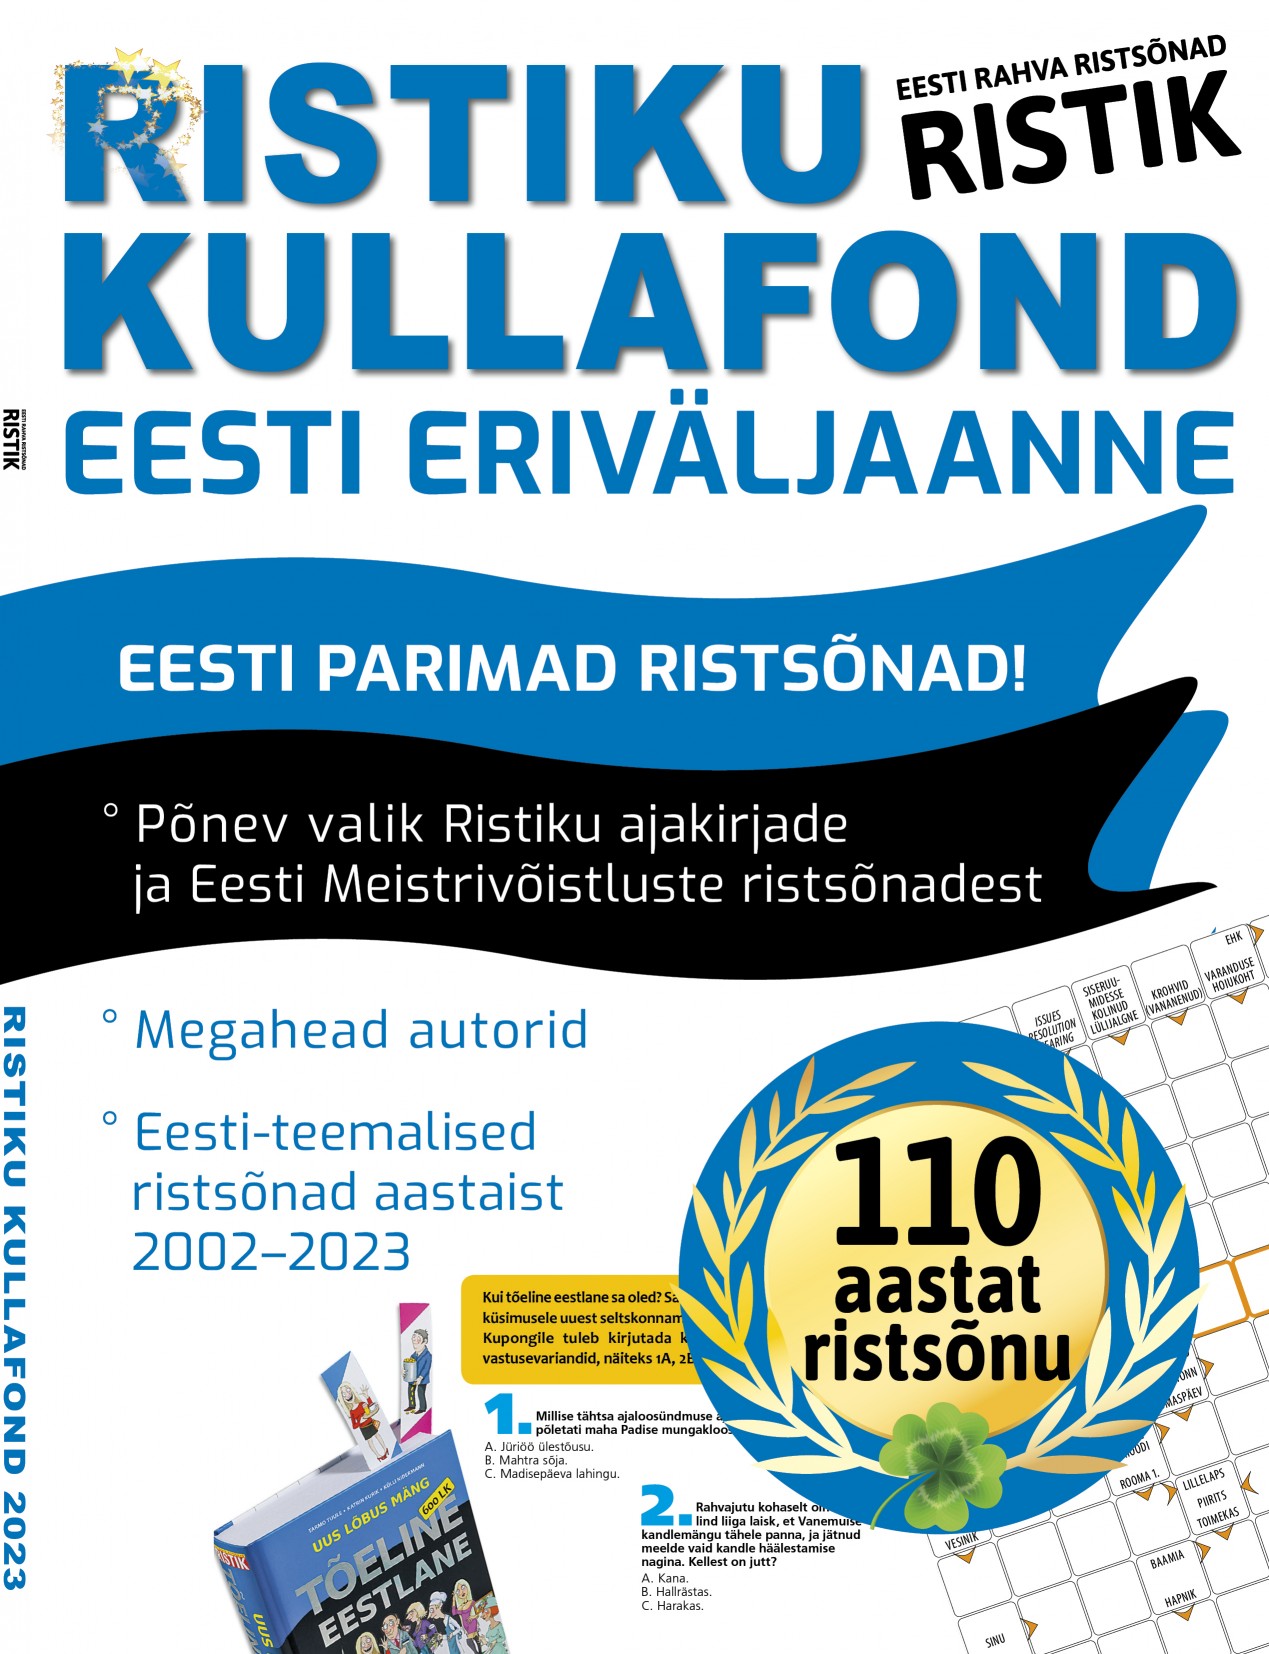 Ristiku Kullafondi Eesti eriväljaanne